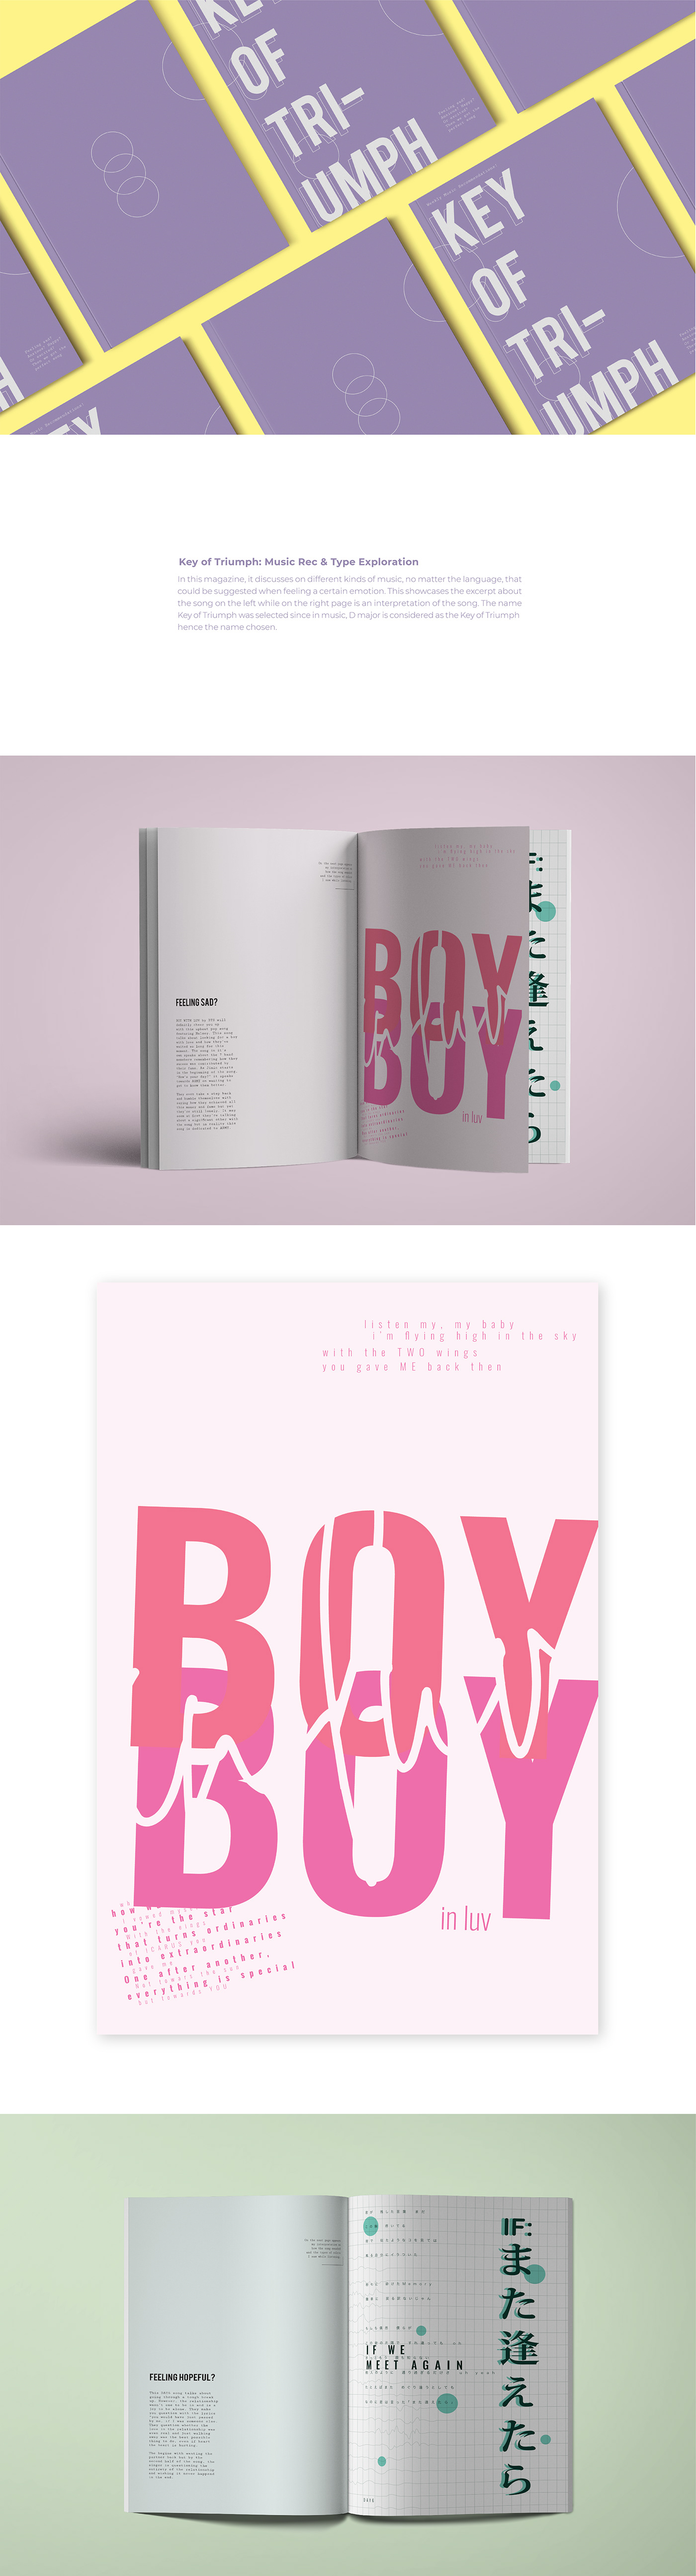 editorial design portfolio typography   magazine graphic design  exploration